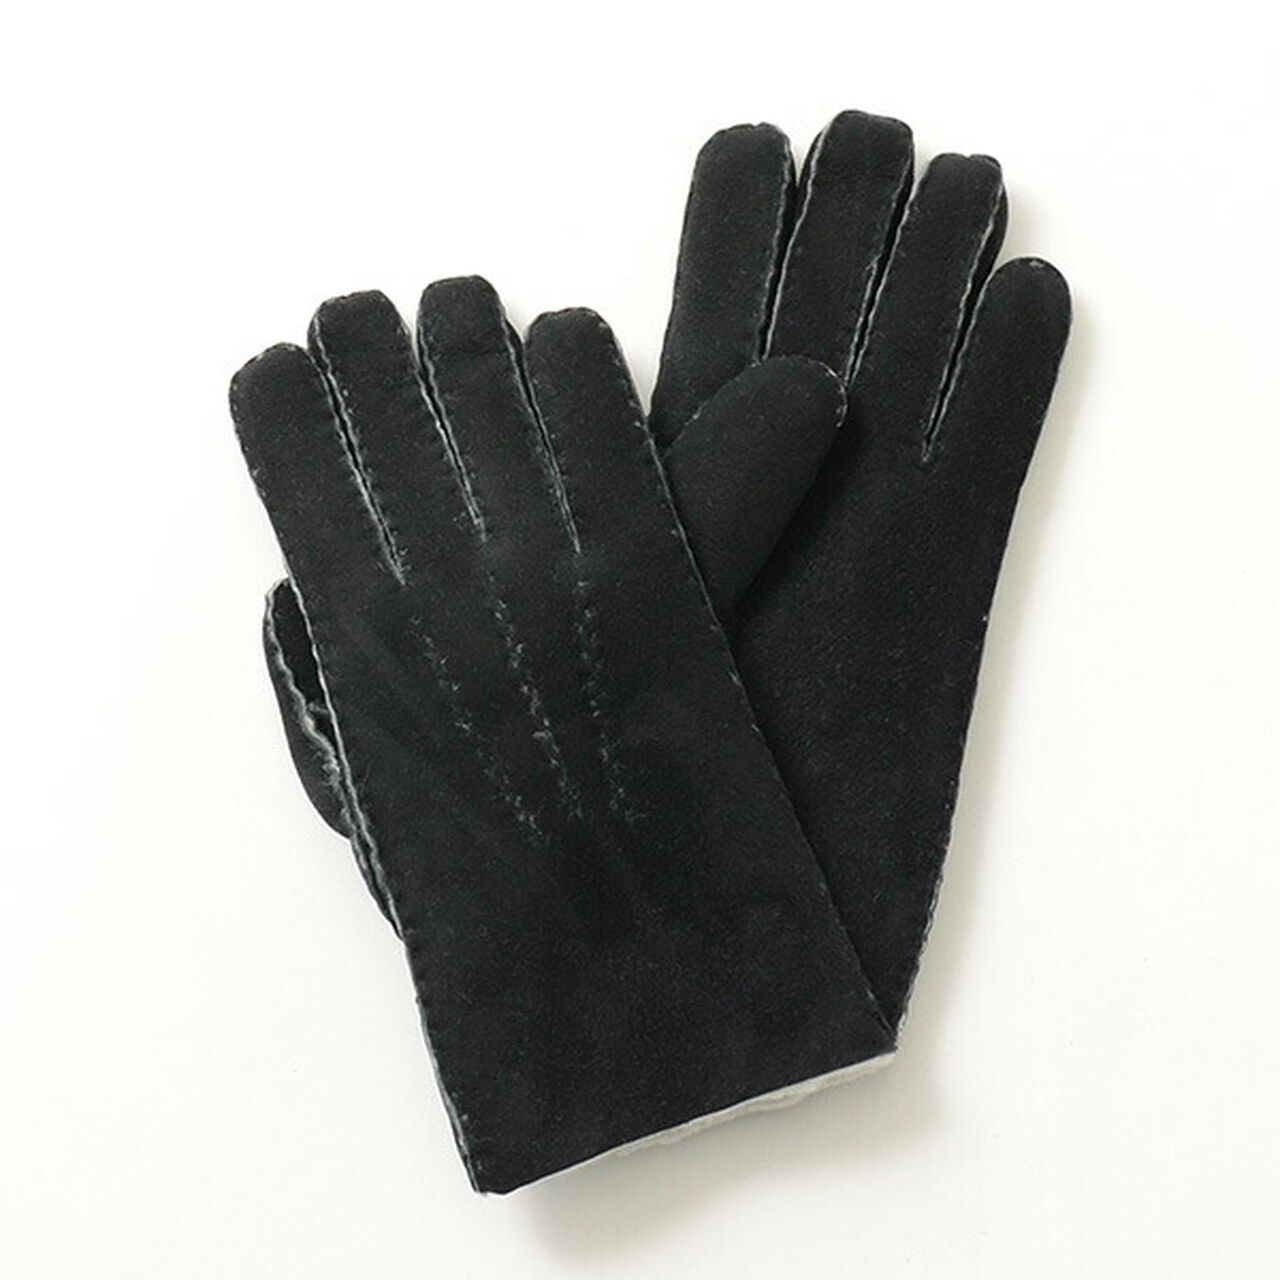 Men's Handthorn Gloves,Black, large image number 0